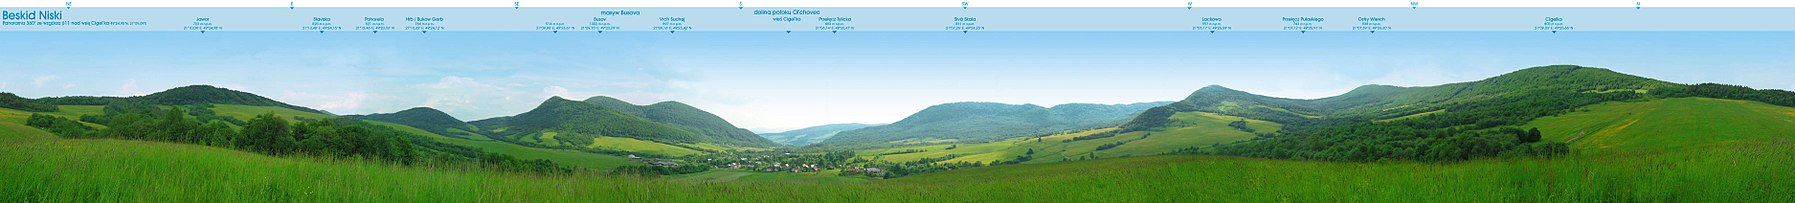 Panorama (360 stopni) ze wzgórza nad Cigeľką na Słowacji pokazująca najwyższe wzniesienia polskiej i słowackiej części Beskidu Niskiego